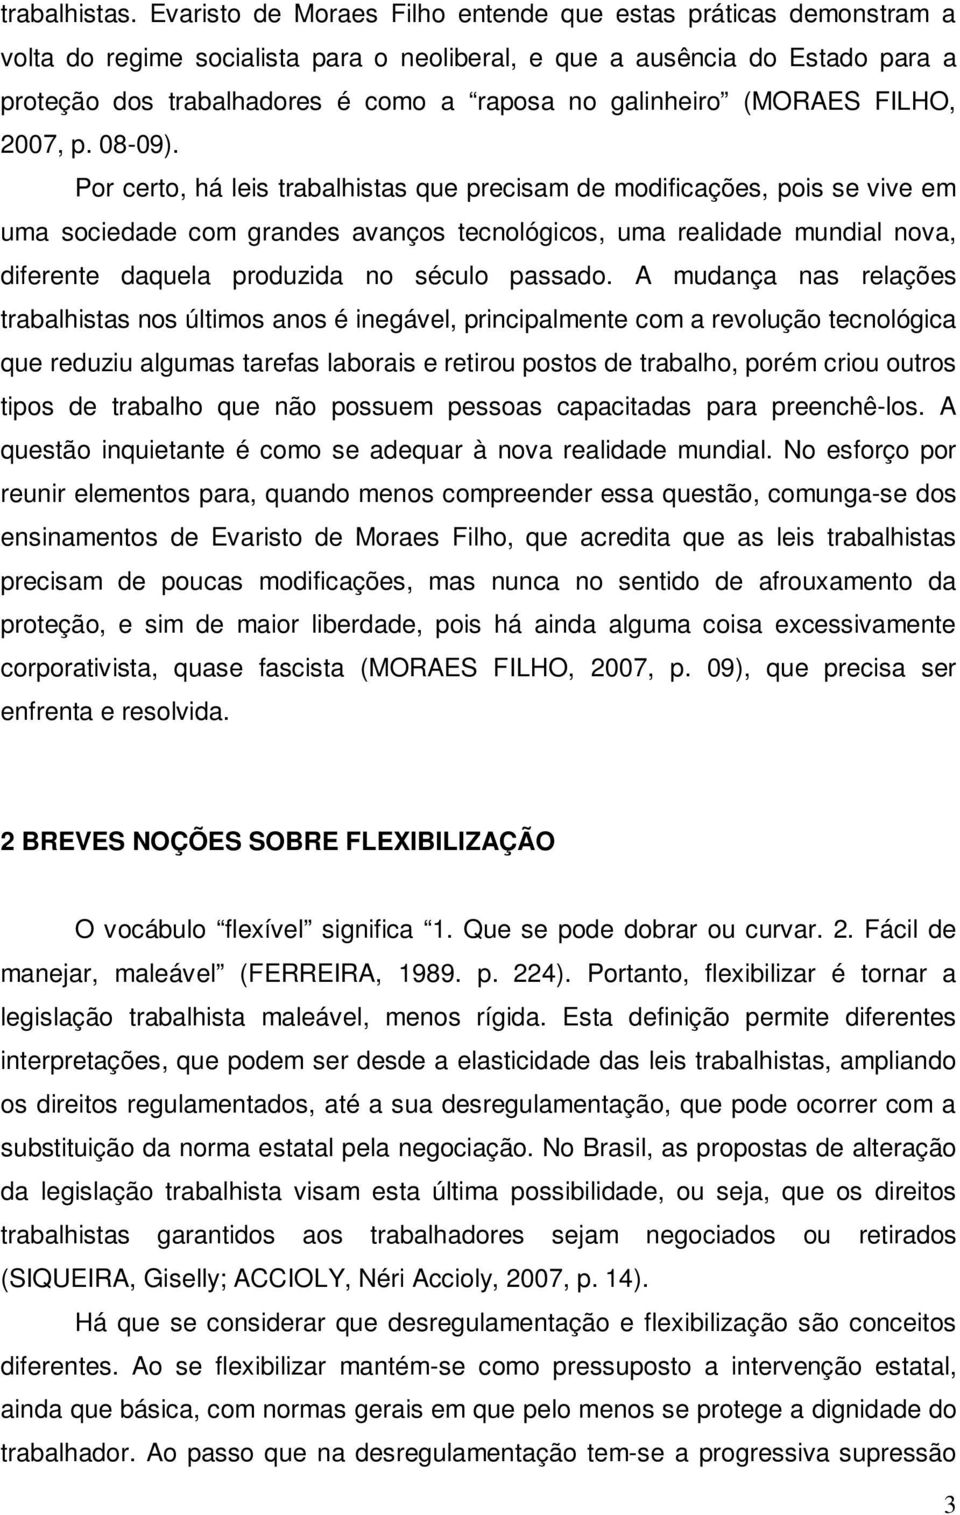 galinheiro (MORAES FILHO, 2007, p. 08-09).